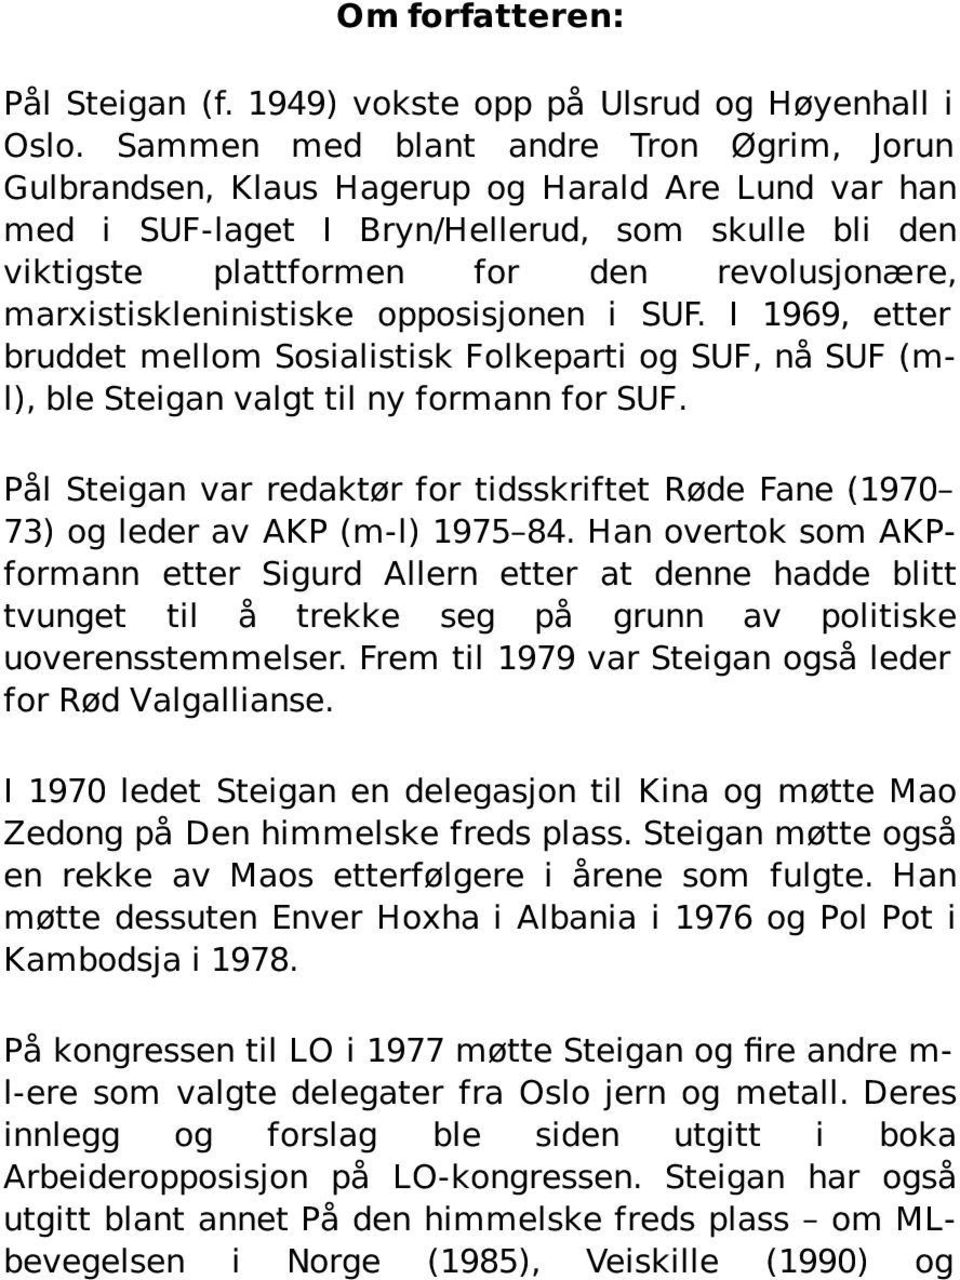 marxistiskleninistiske opposisjonen i SUF. I 1969, etter bruddet mellom Sosialistisk Folkeparti og SUF, nå SUF (ml), ble Steigan valgt til ny formann for SUF.